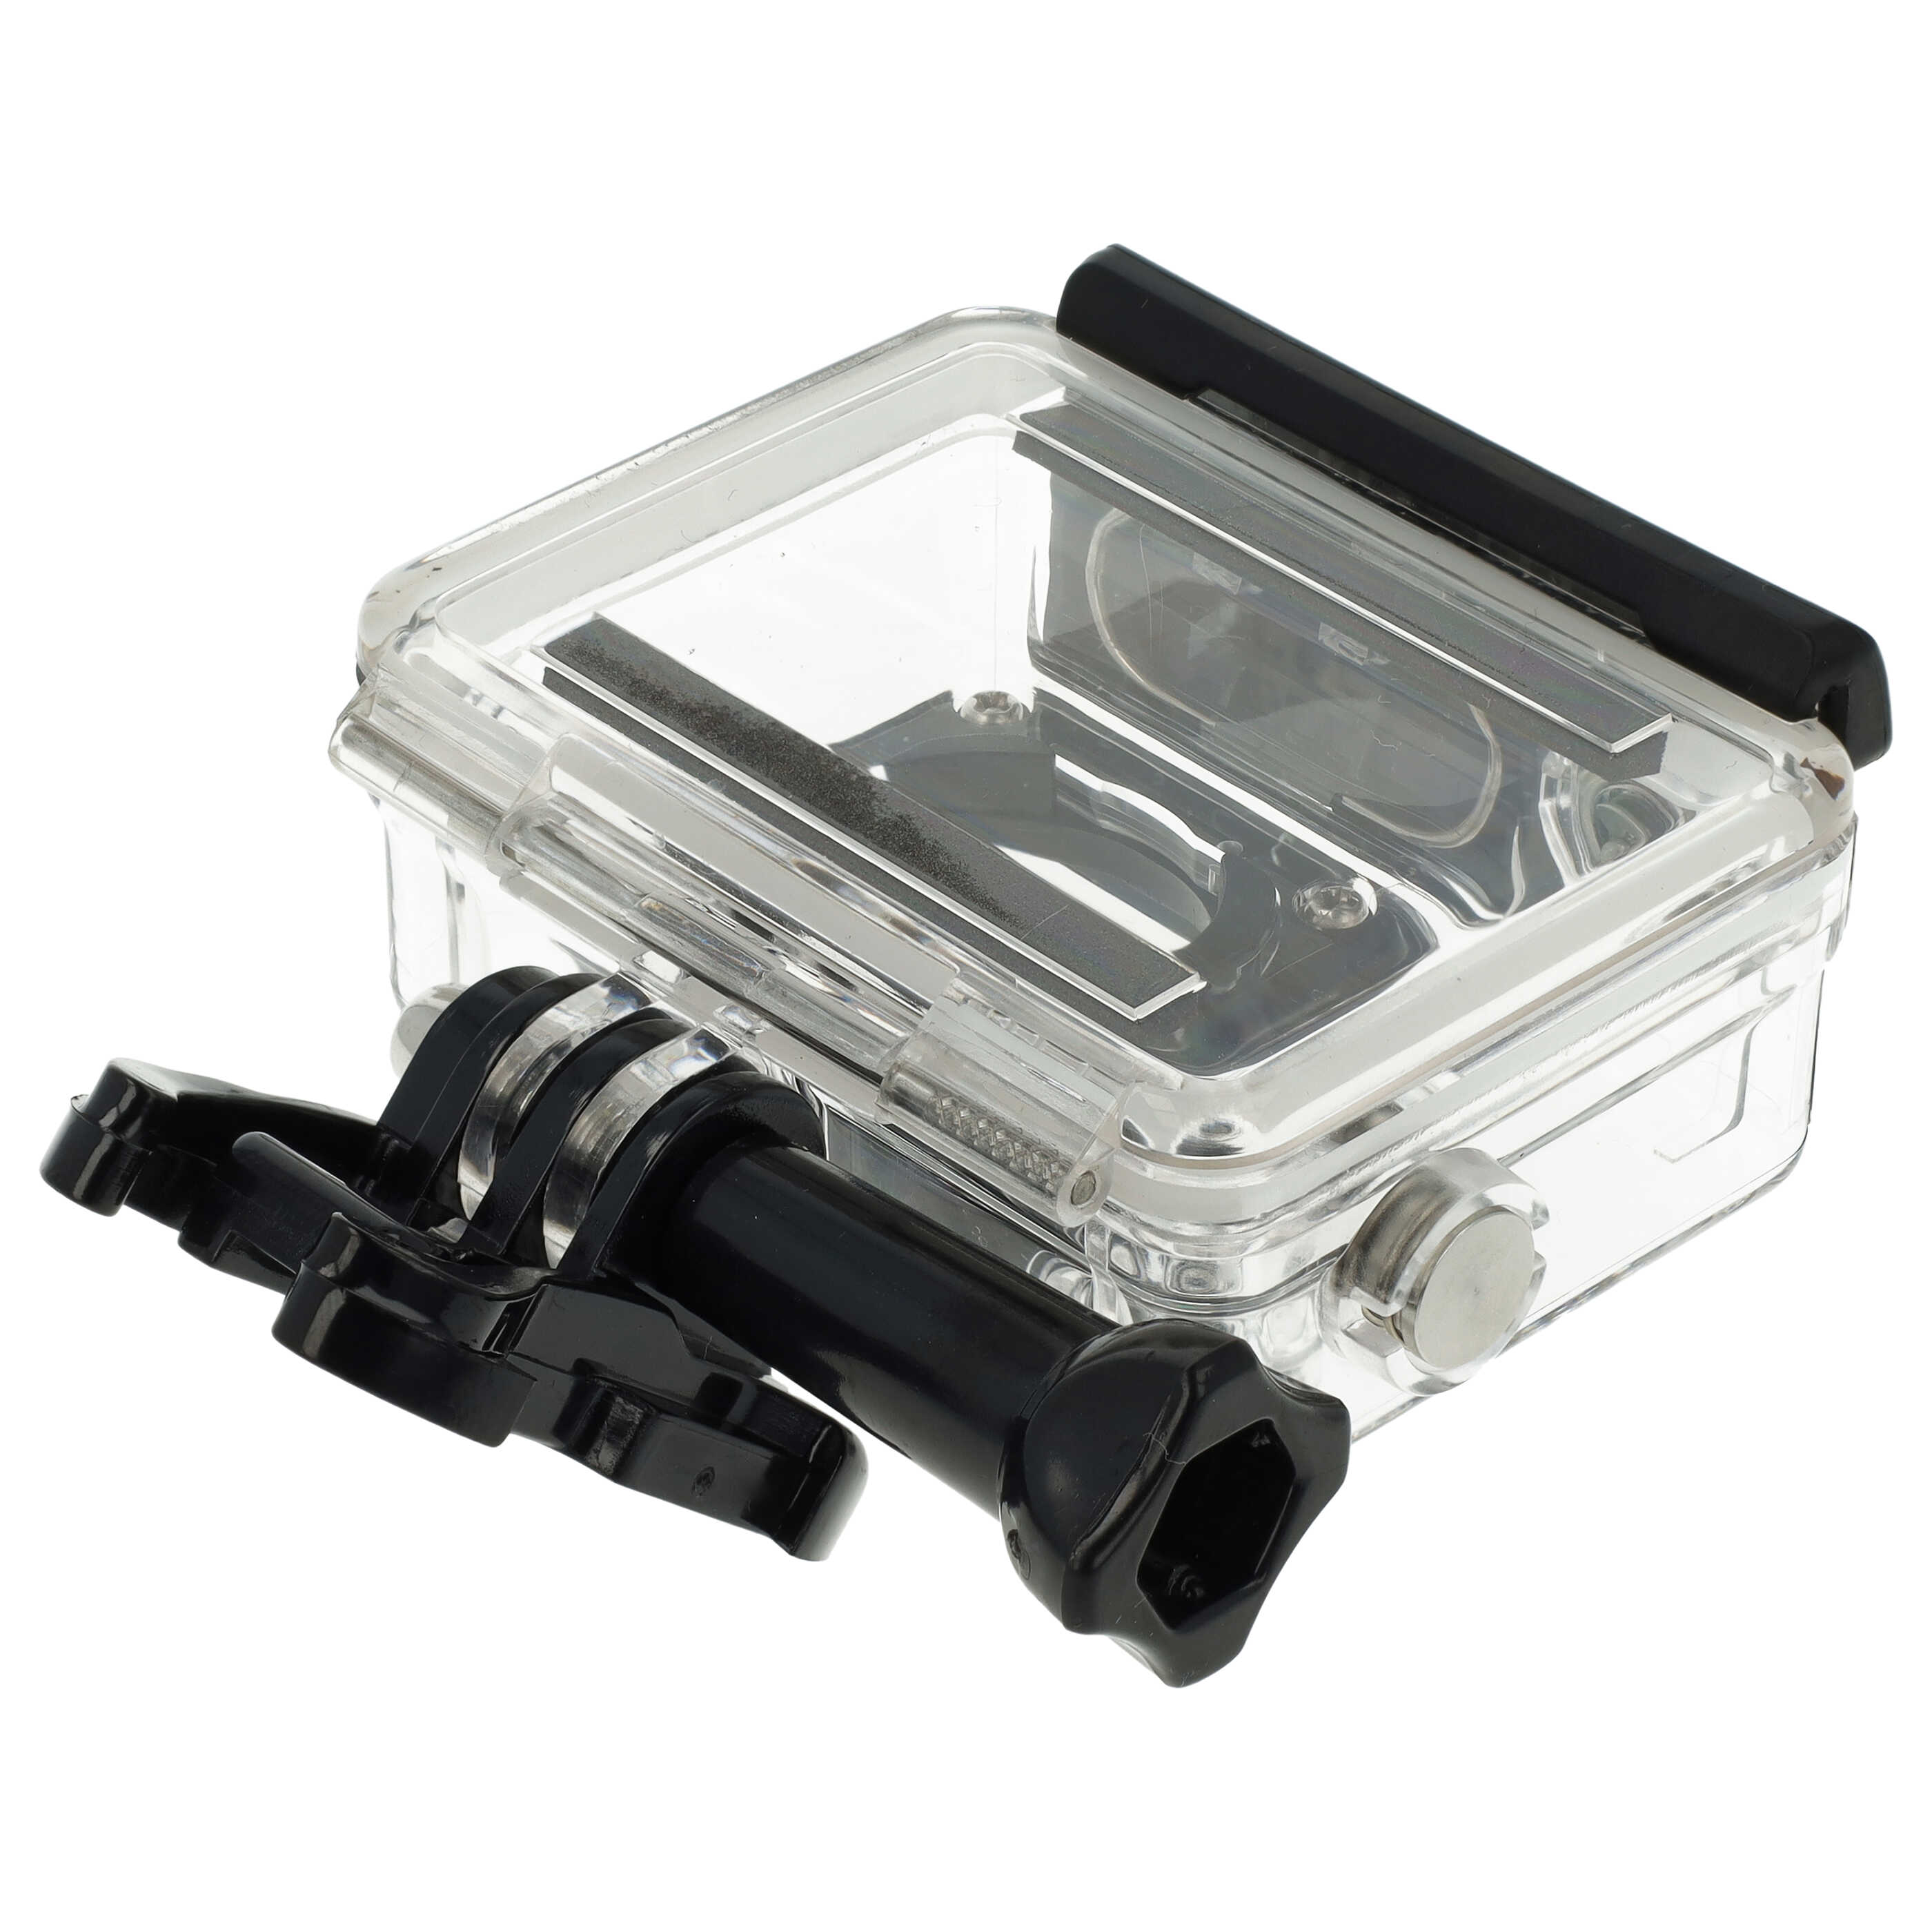 Unterwassergehäuse passend für GoPro Hero 3, 3+, 4 ActionCam - Bis max. 45 m Tiefe